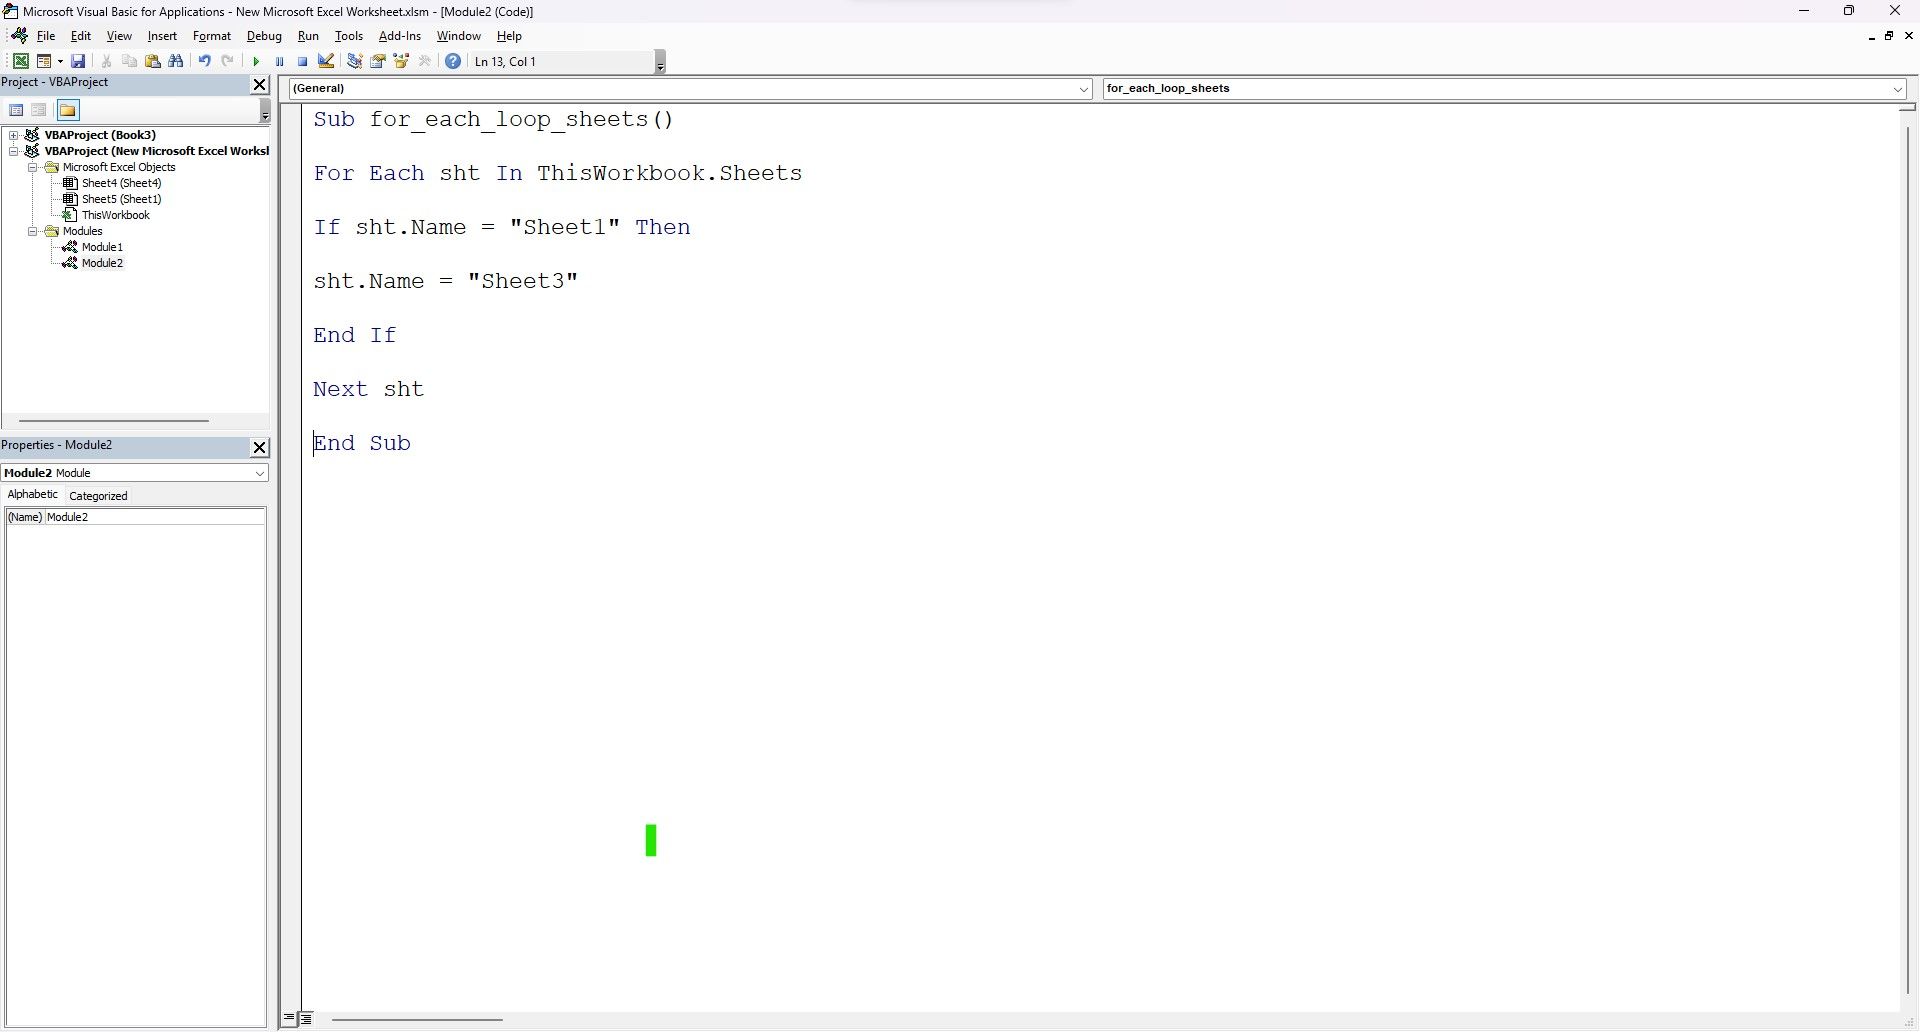 Cuplikan kode VBA di dalam editor pengkodean